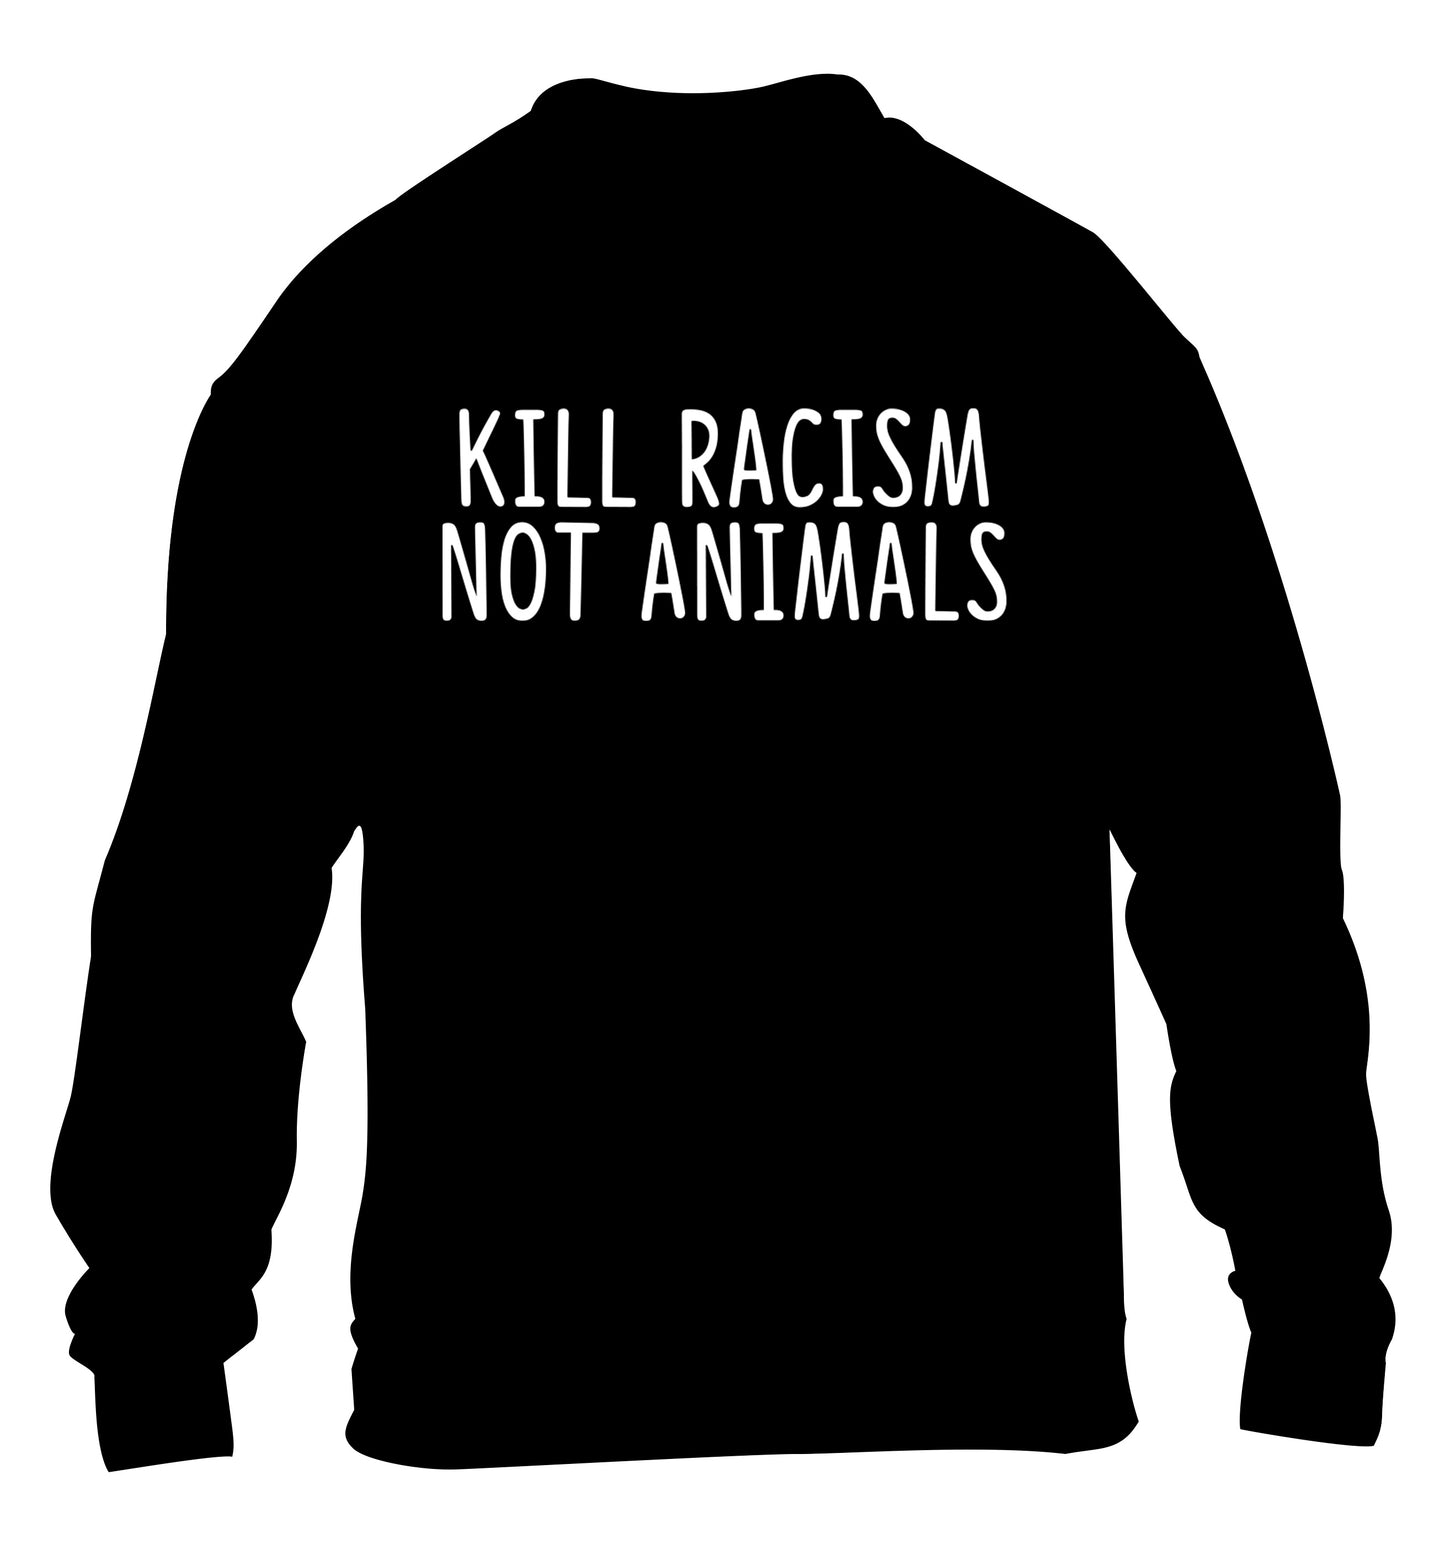 Kill Racism Not Animals children's black sweater 12-13 Years